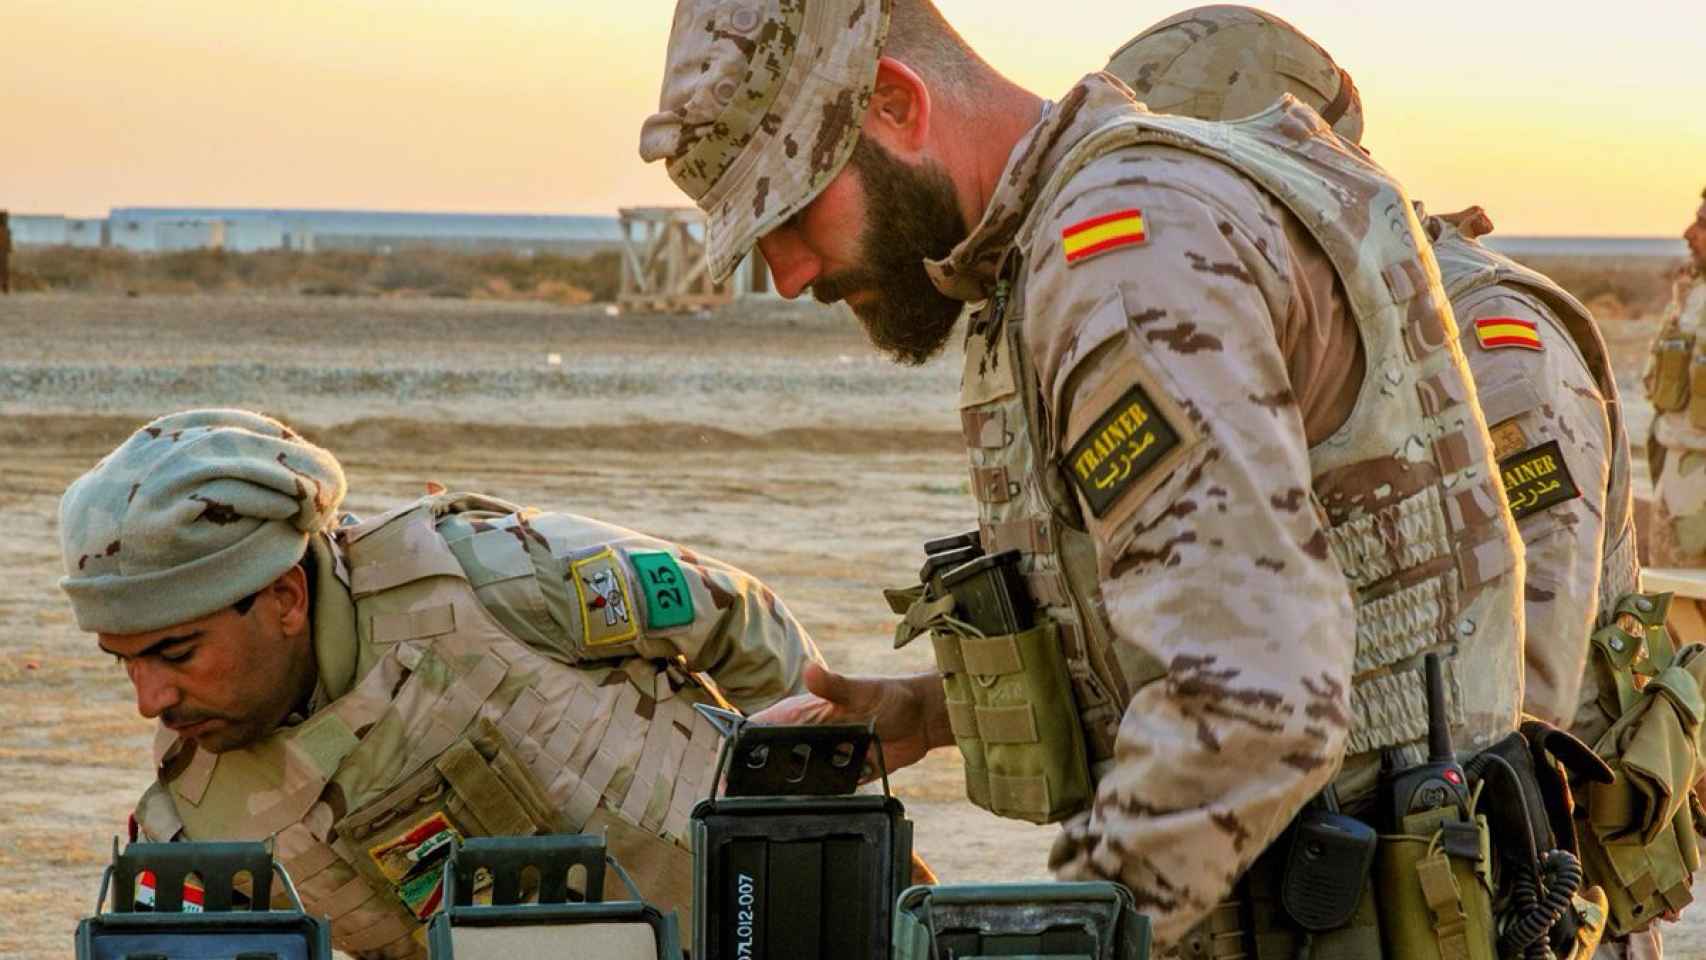 Militar español instruye a las tropas iraquíes en su lucha contra el yihadismo.